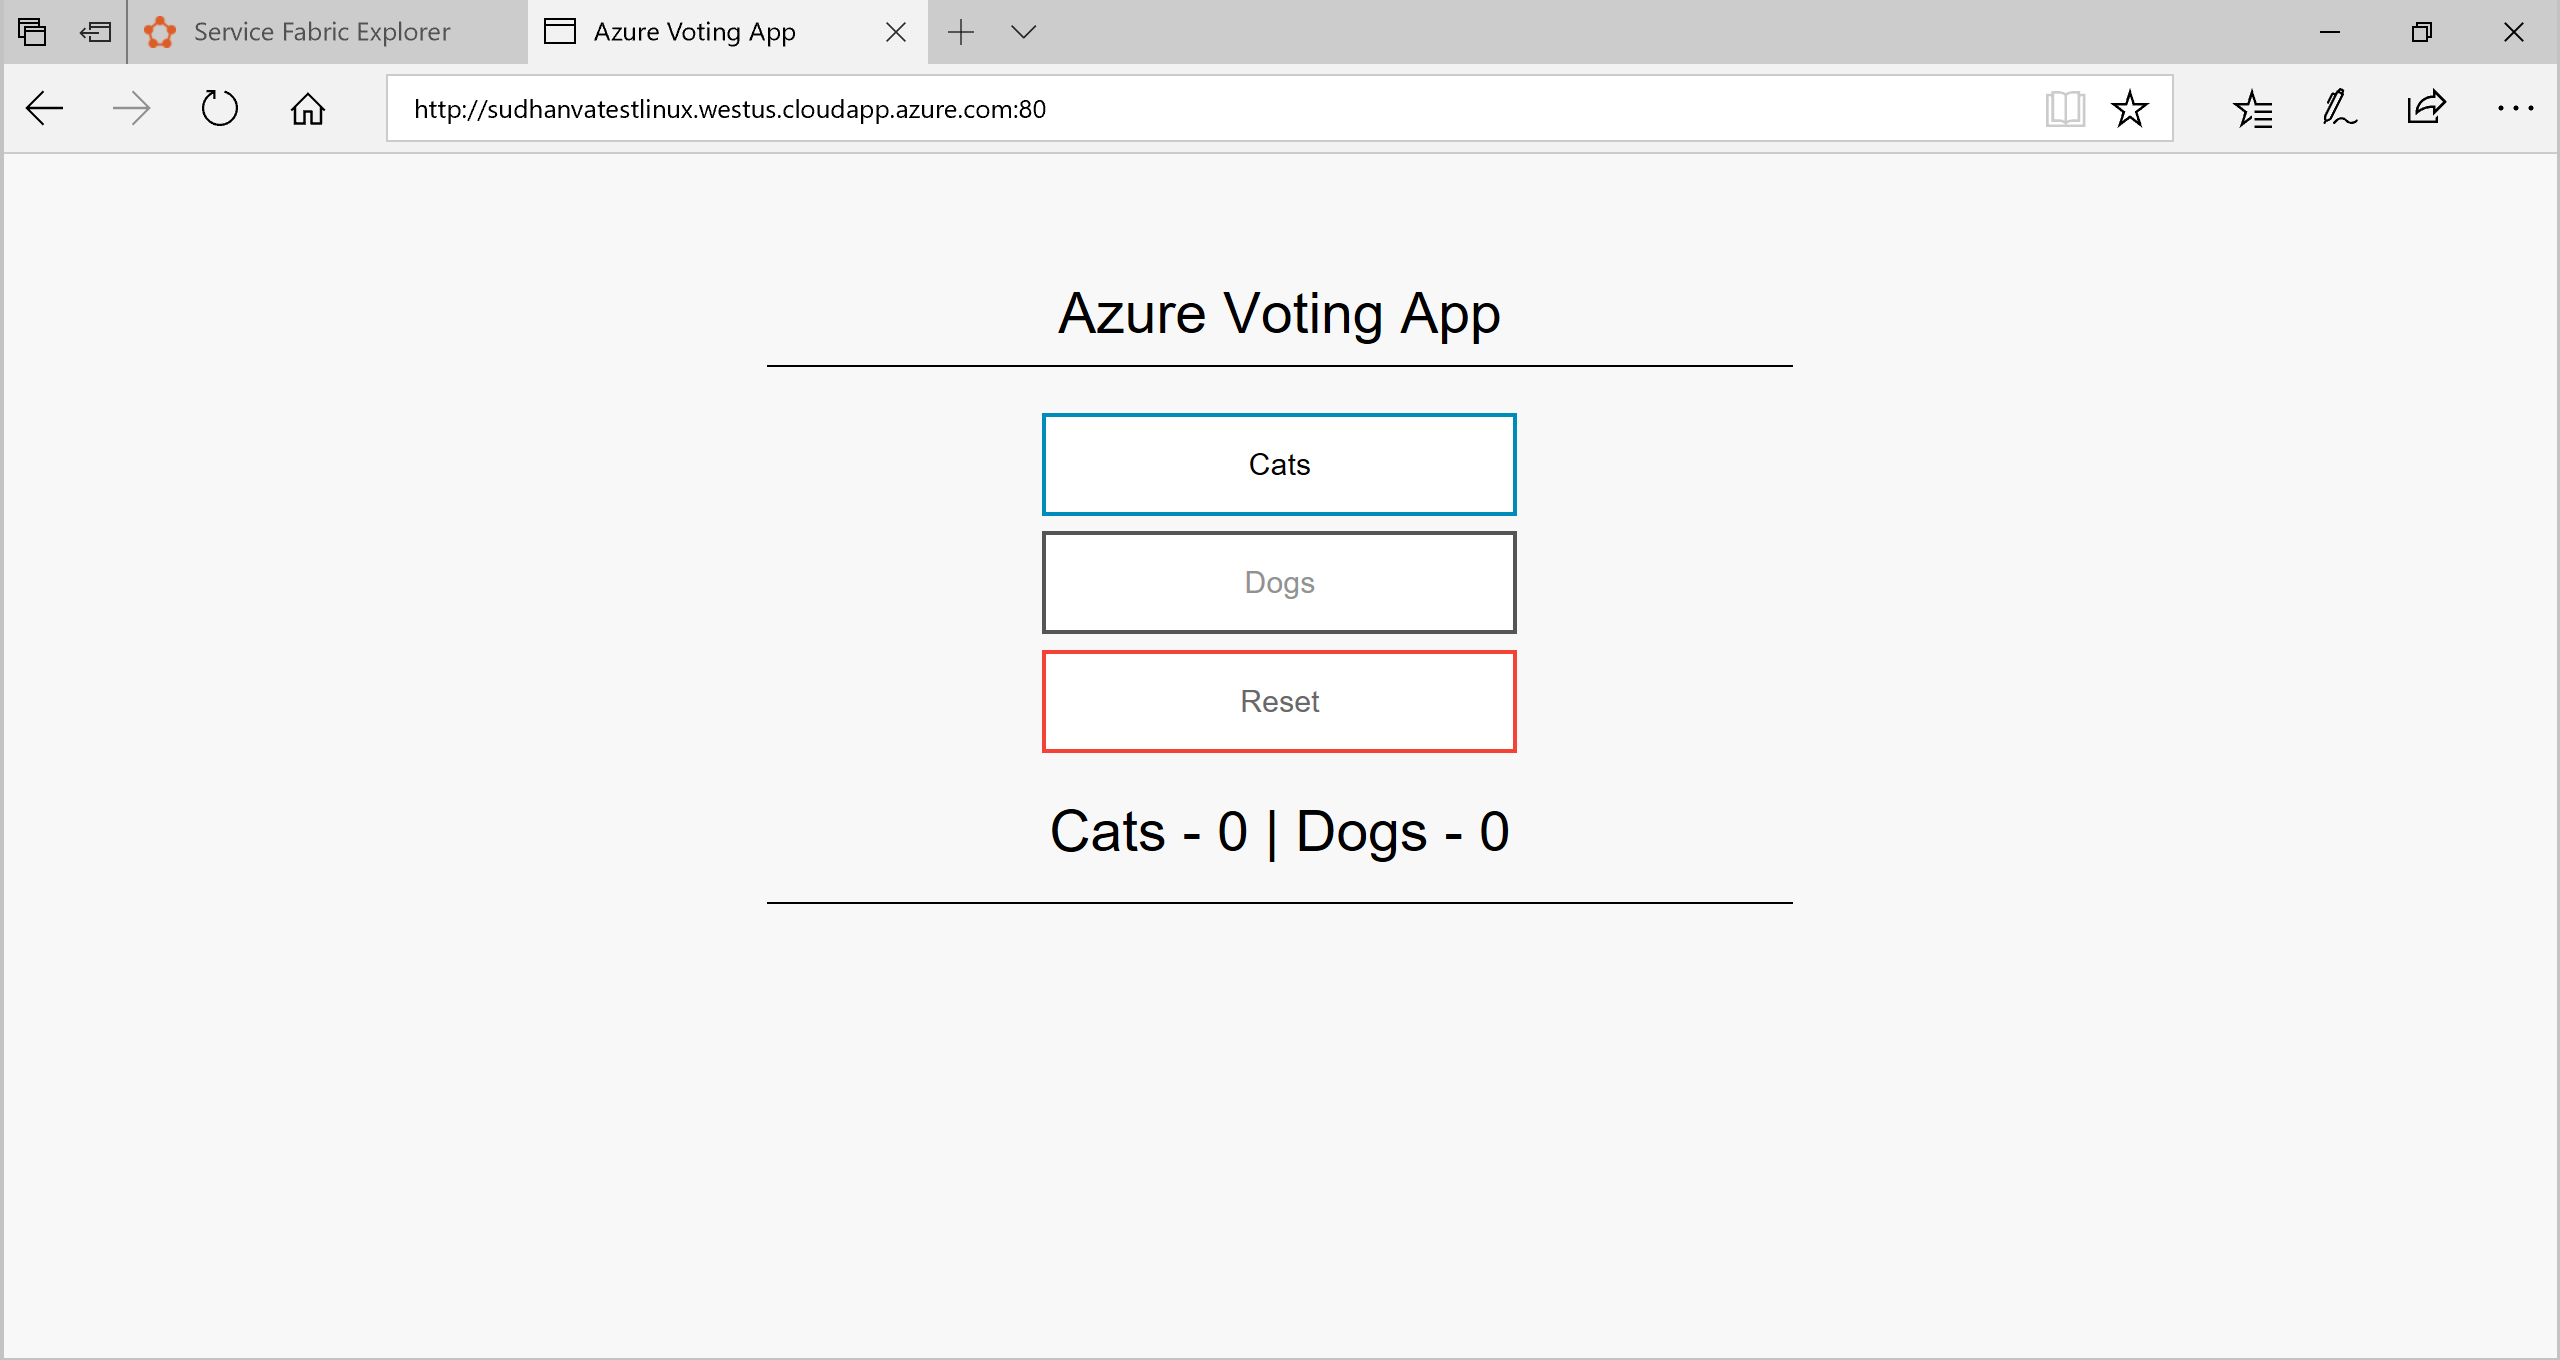 Captura de ecrã a mostrar a Aplicação de Voto do Azure com botões para Gatos, Cães e Repor e totais.